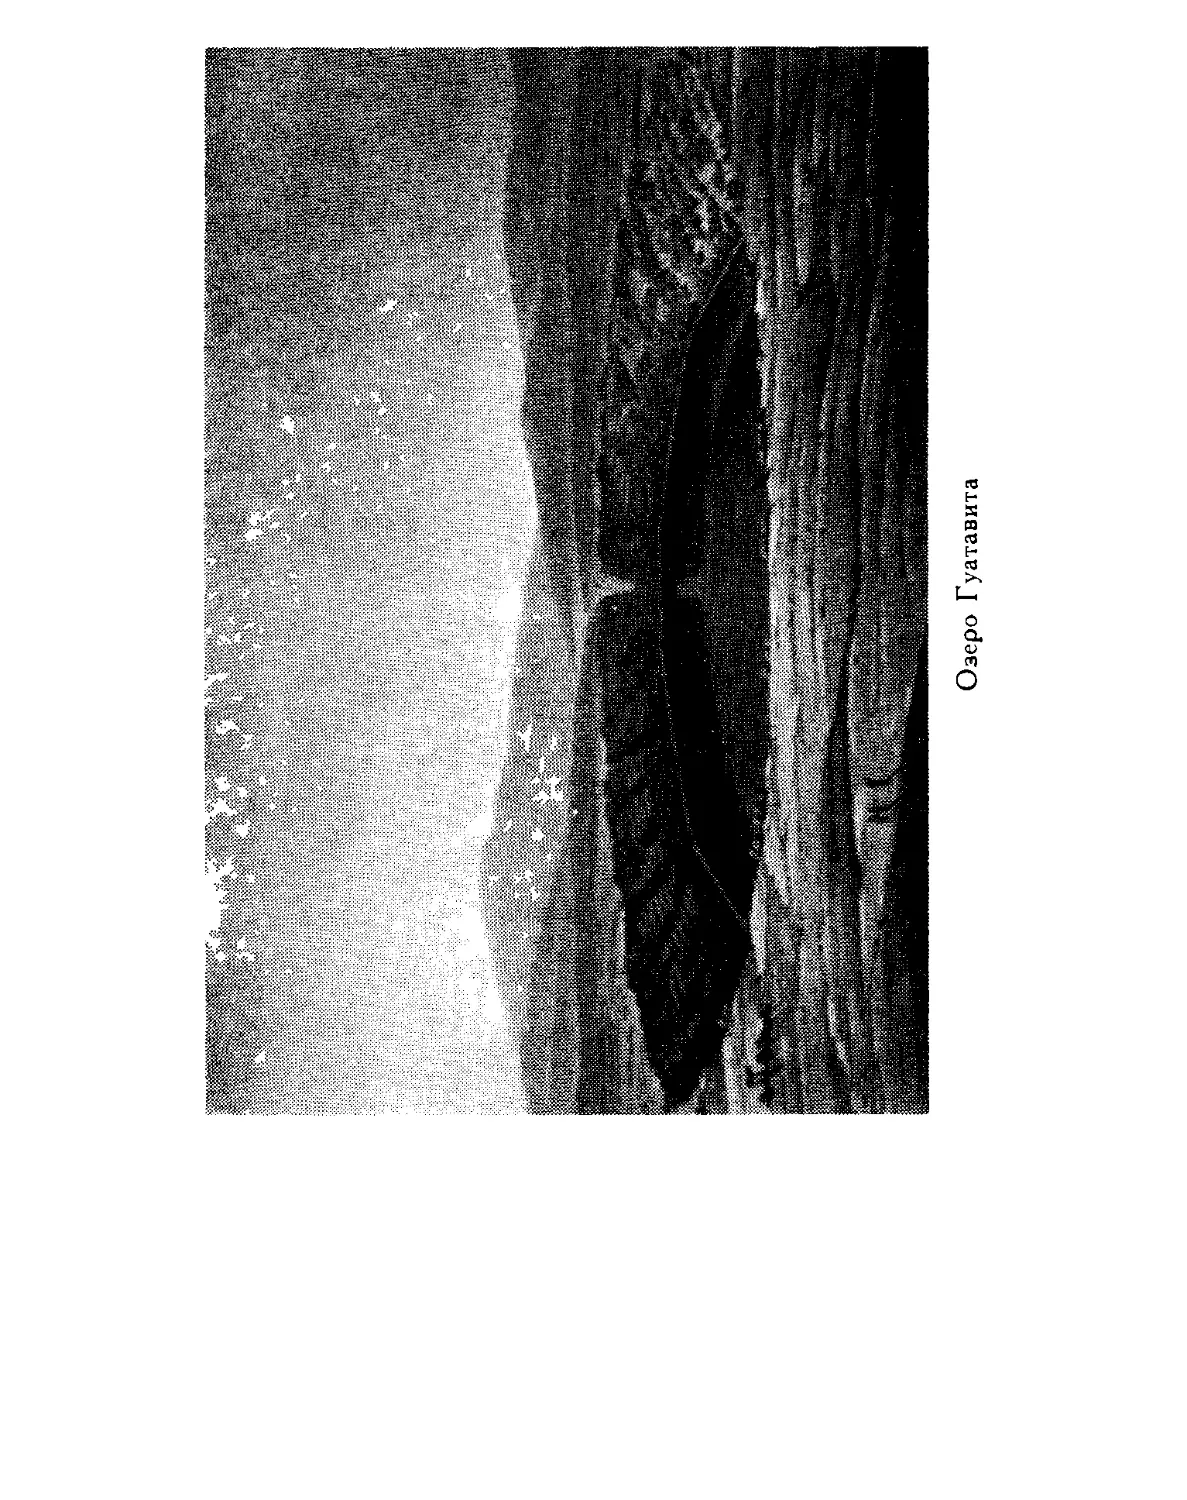 0035_Ãóìáîëüäò. Êàðòèíû Ïðèðîäû 1959_Page_018_Image_0001.tiff